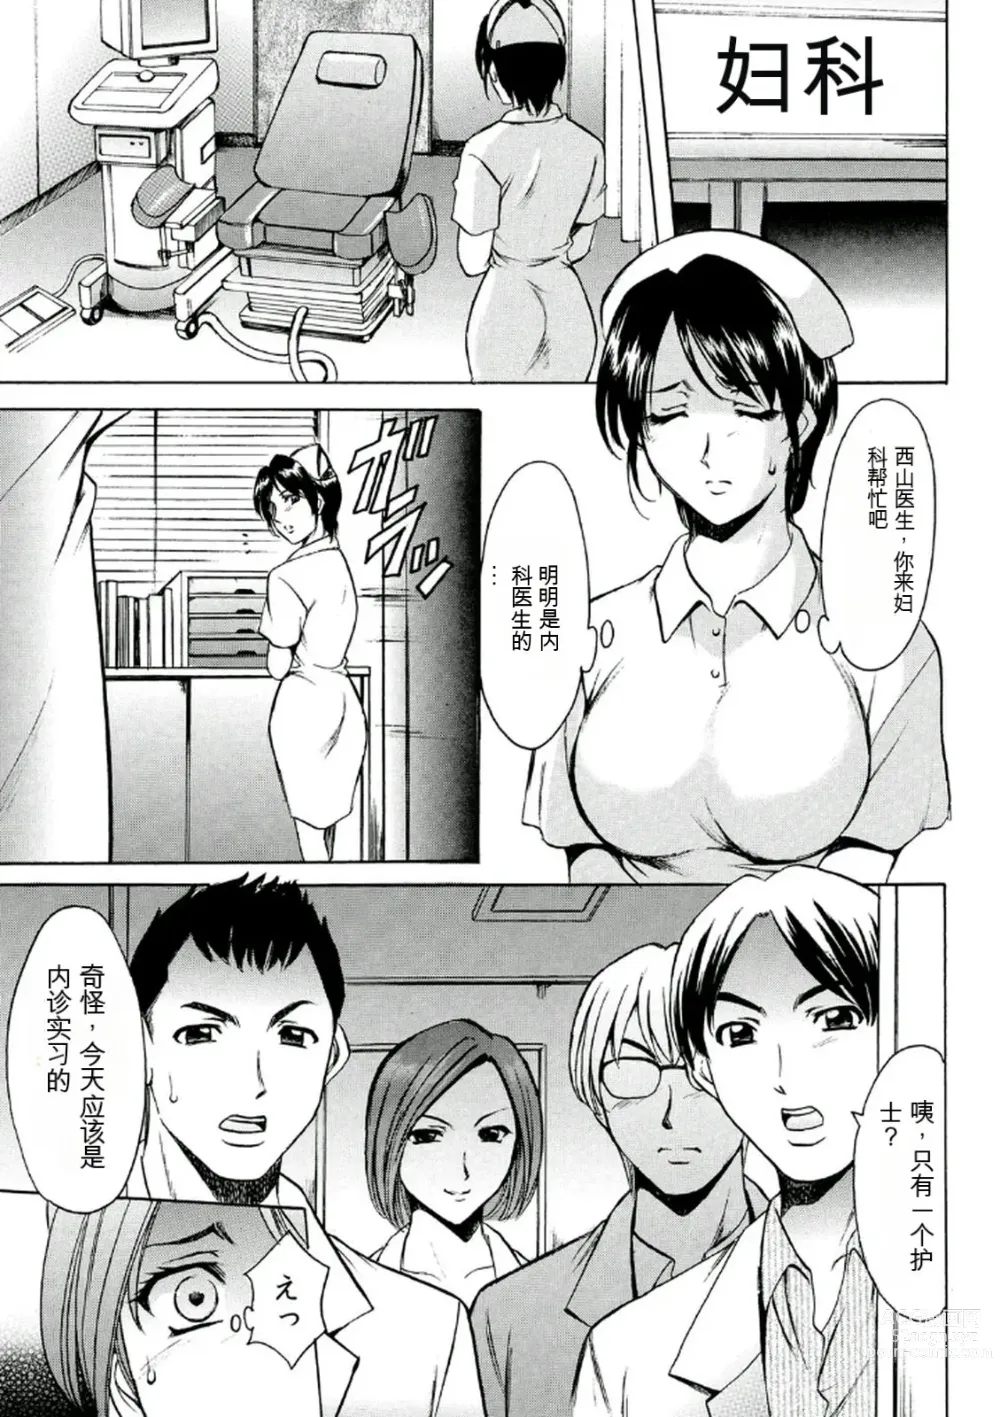 Page 27 of manga Chijoku Byoutou -Hakui no Datenshi-